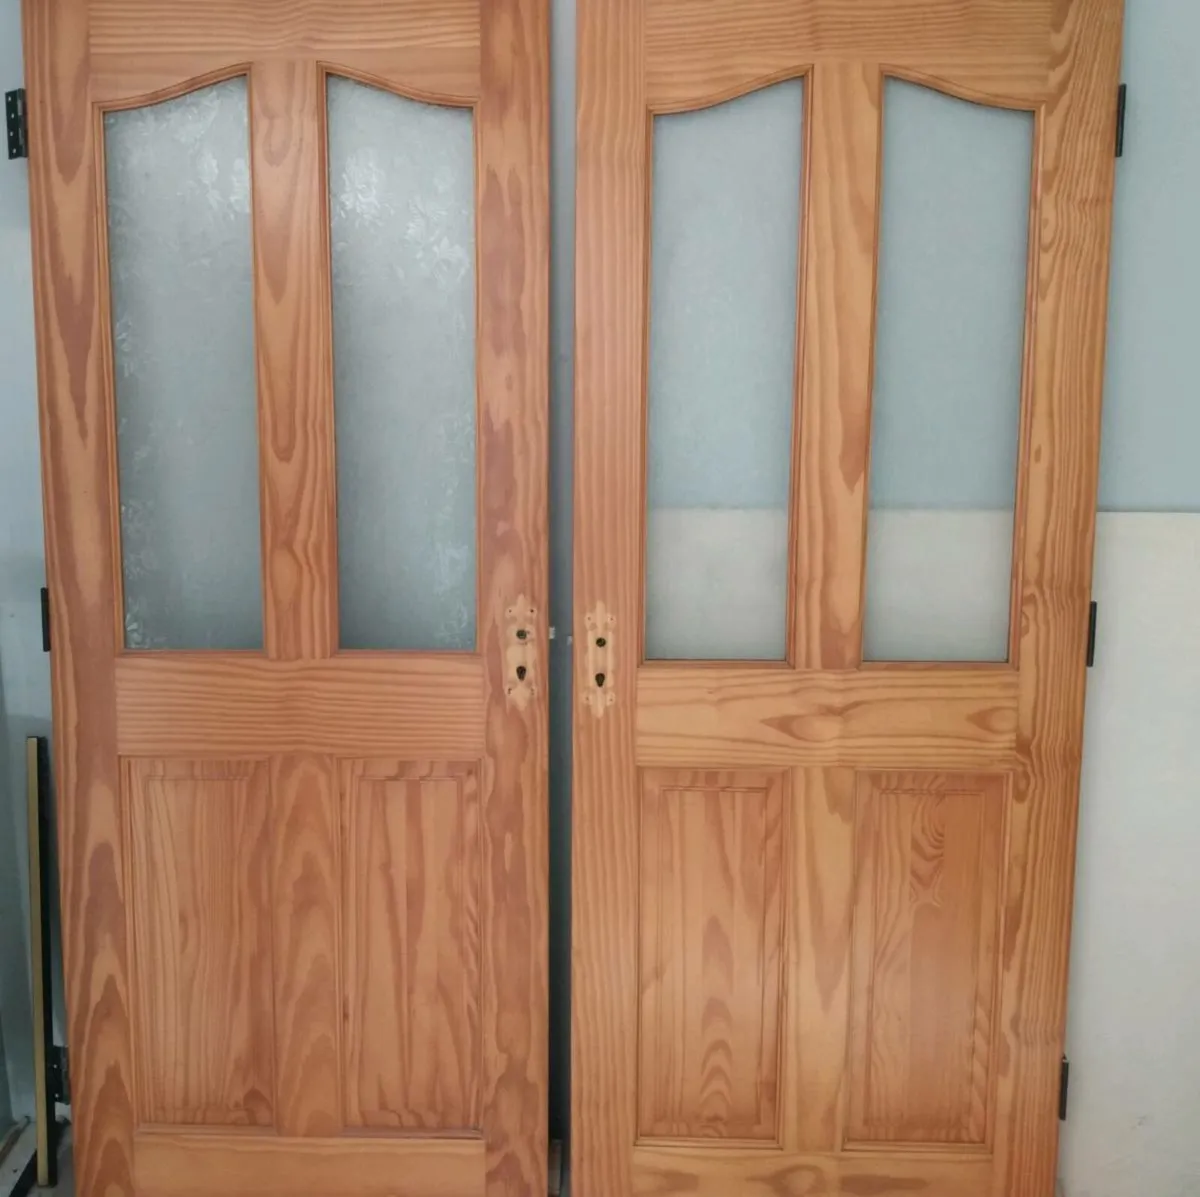 Solid pine doors